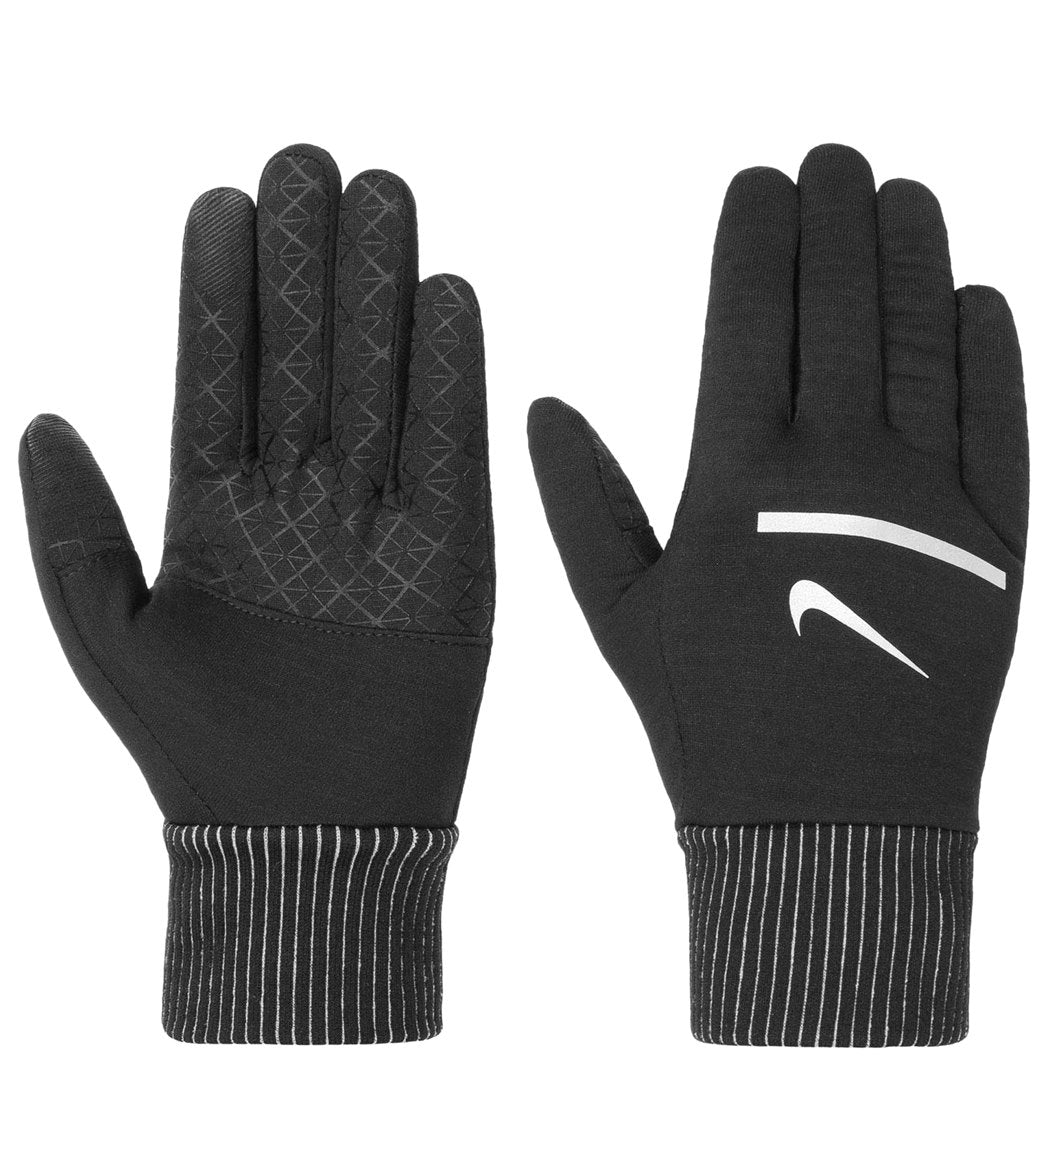 Nike Men's Sphere Running Gloves 2.0 - Black/Silver Small - Swimoutlet.com